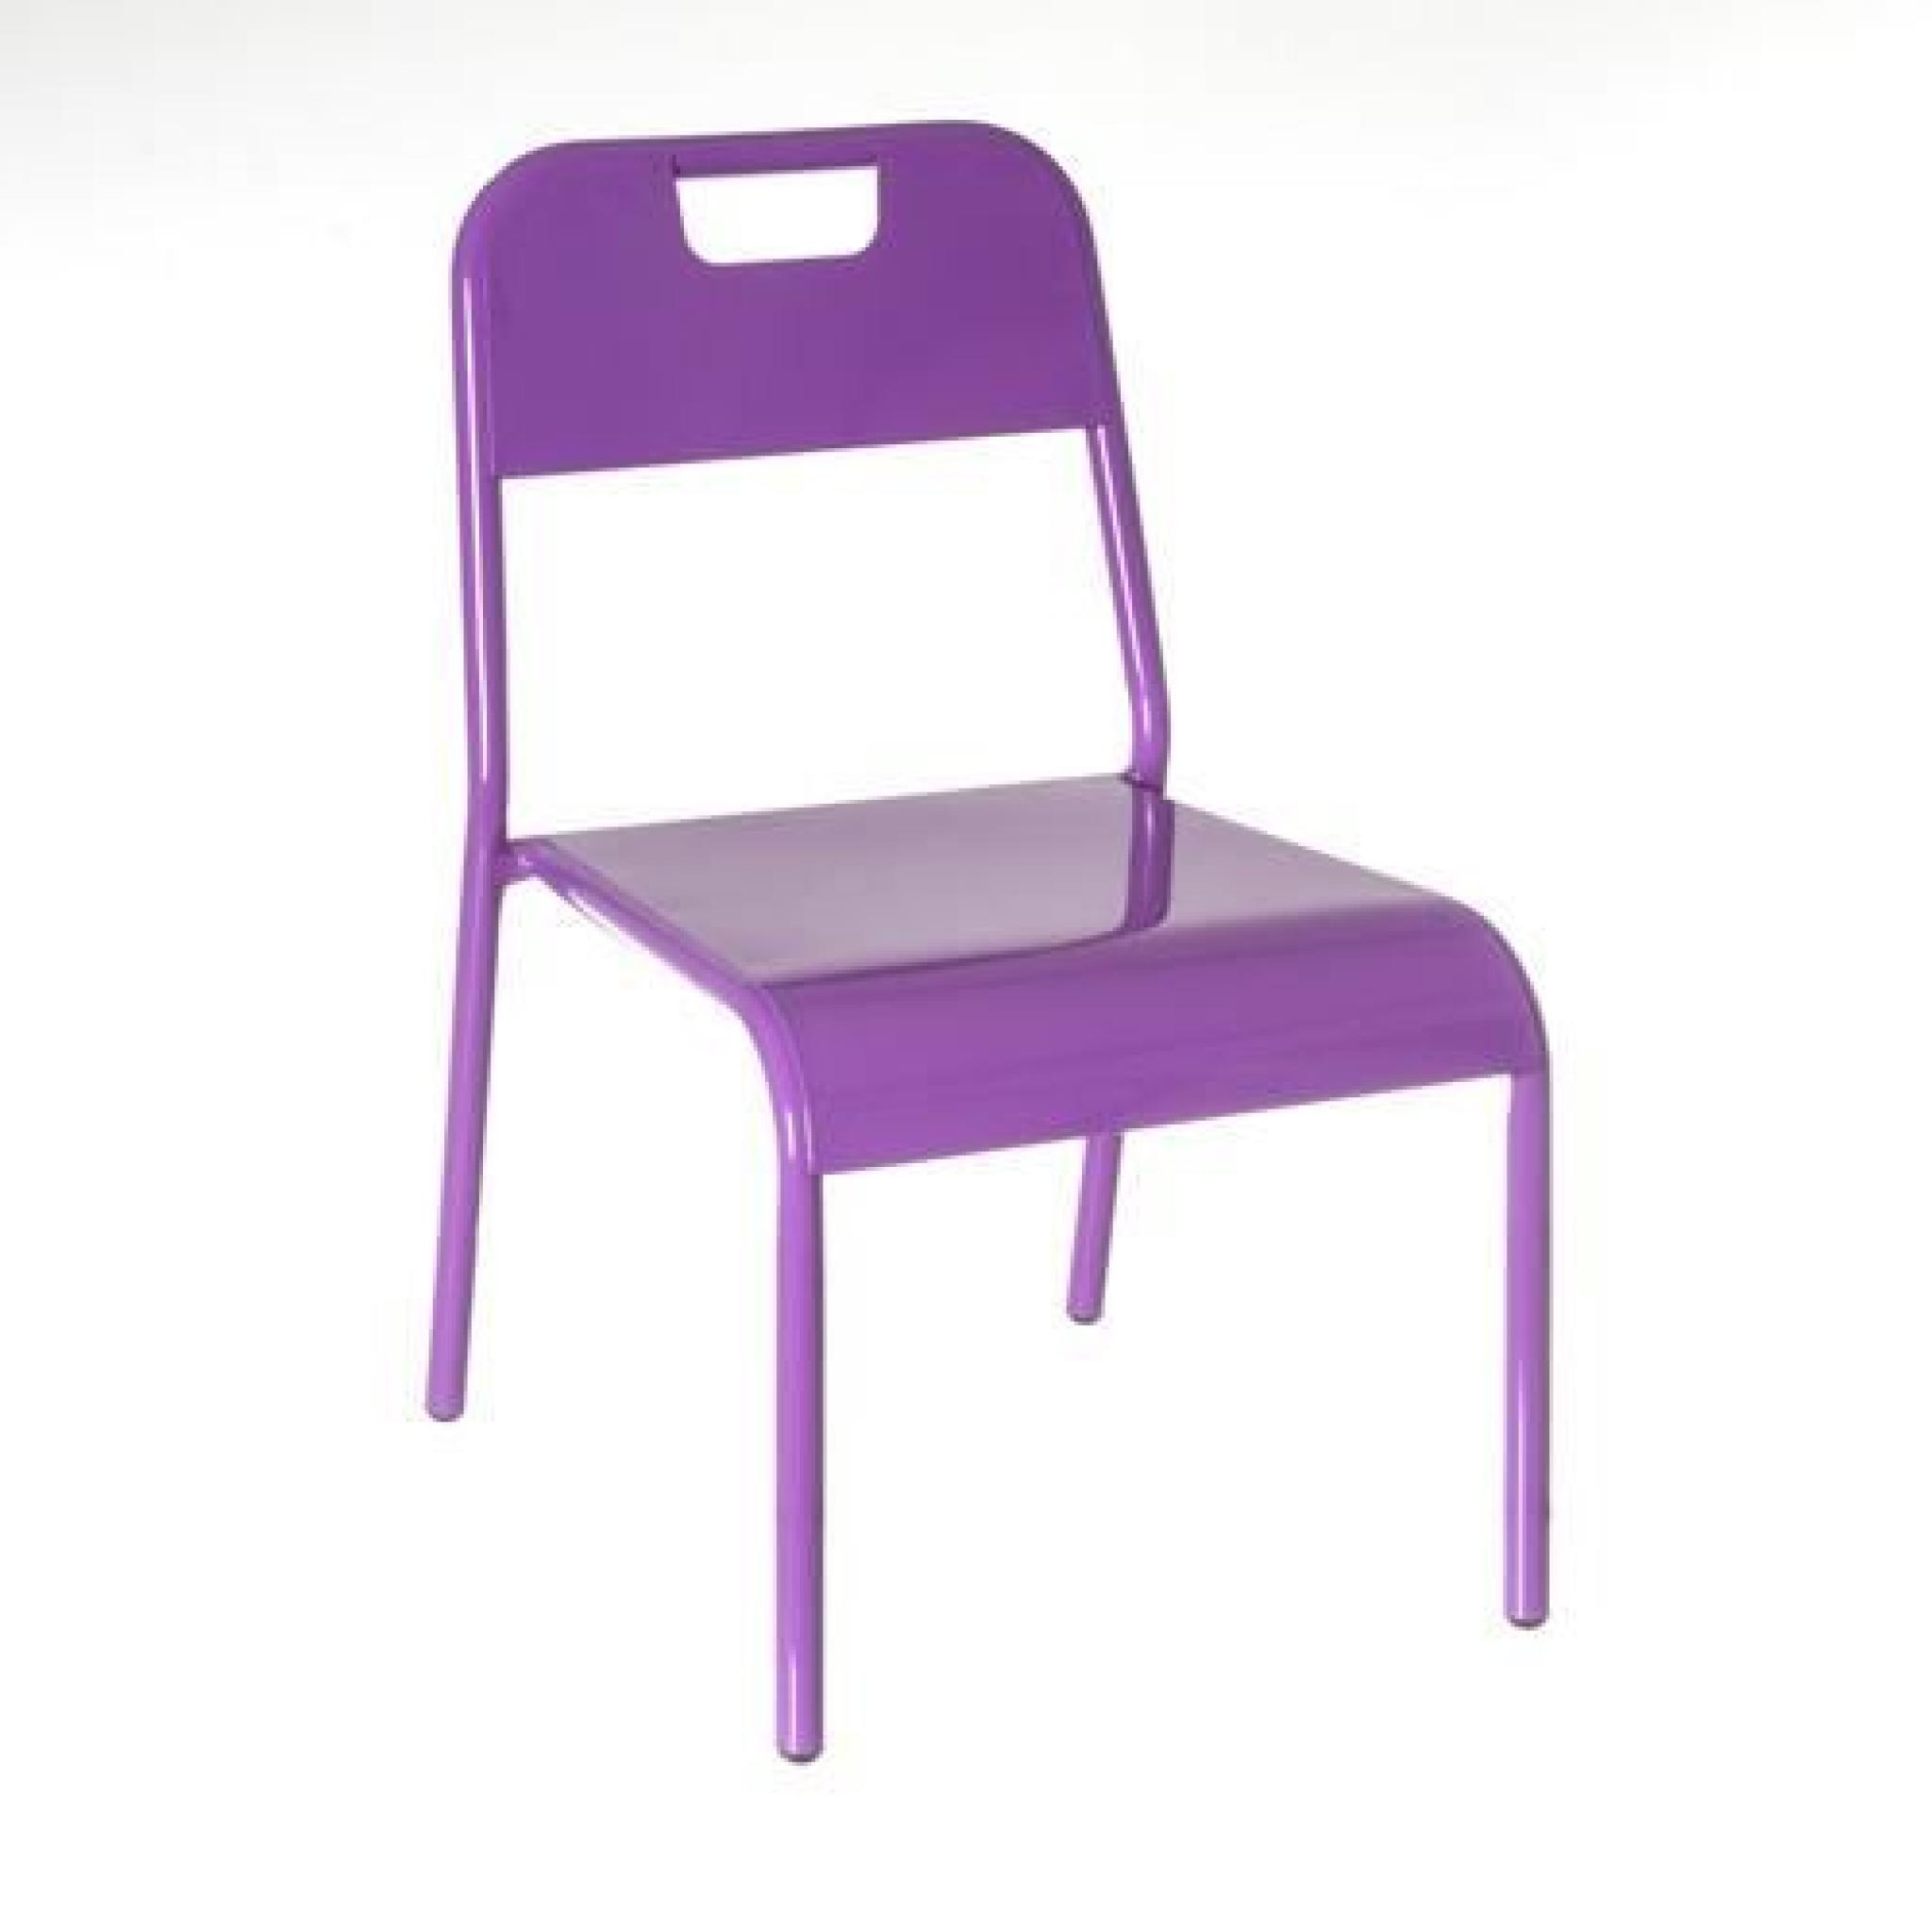 Chaise enfant Design - Métal - Violet